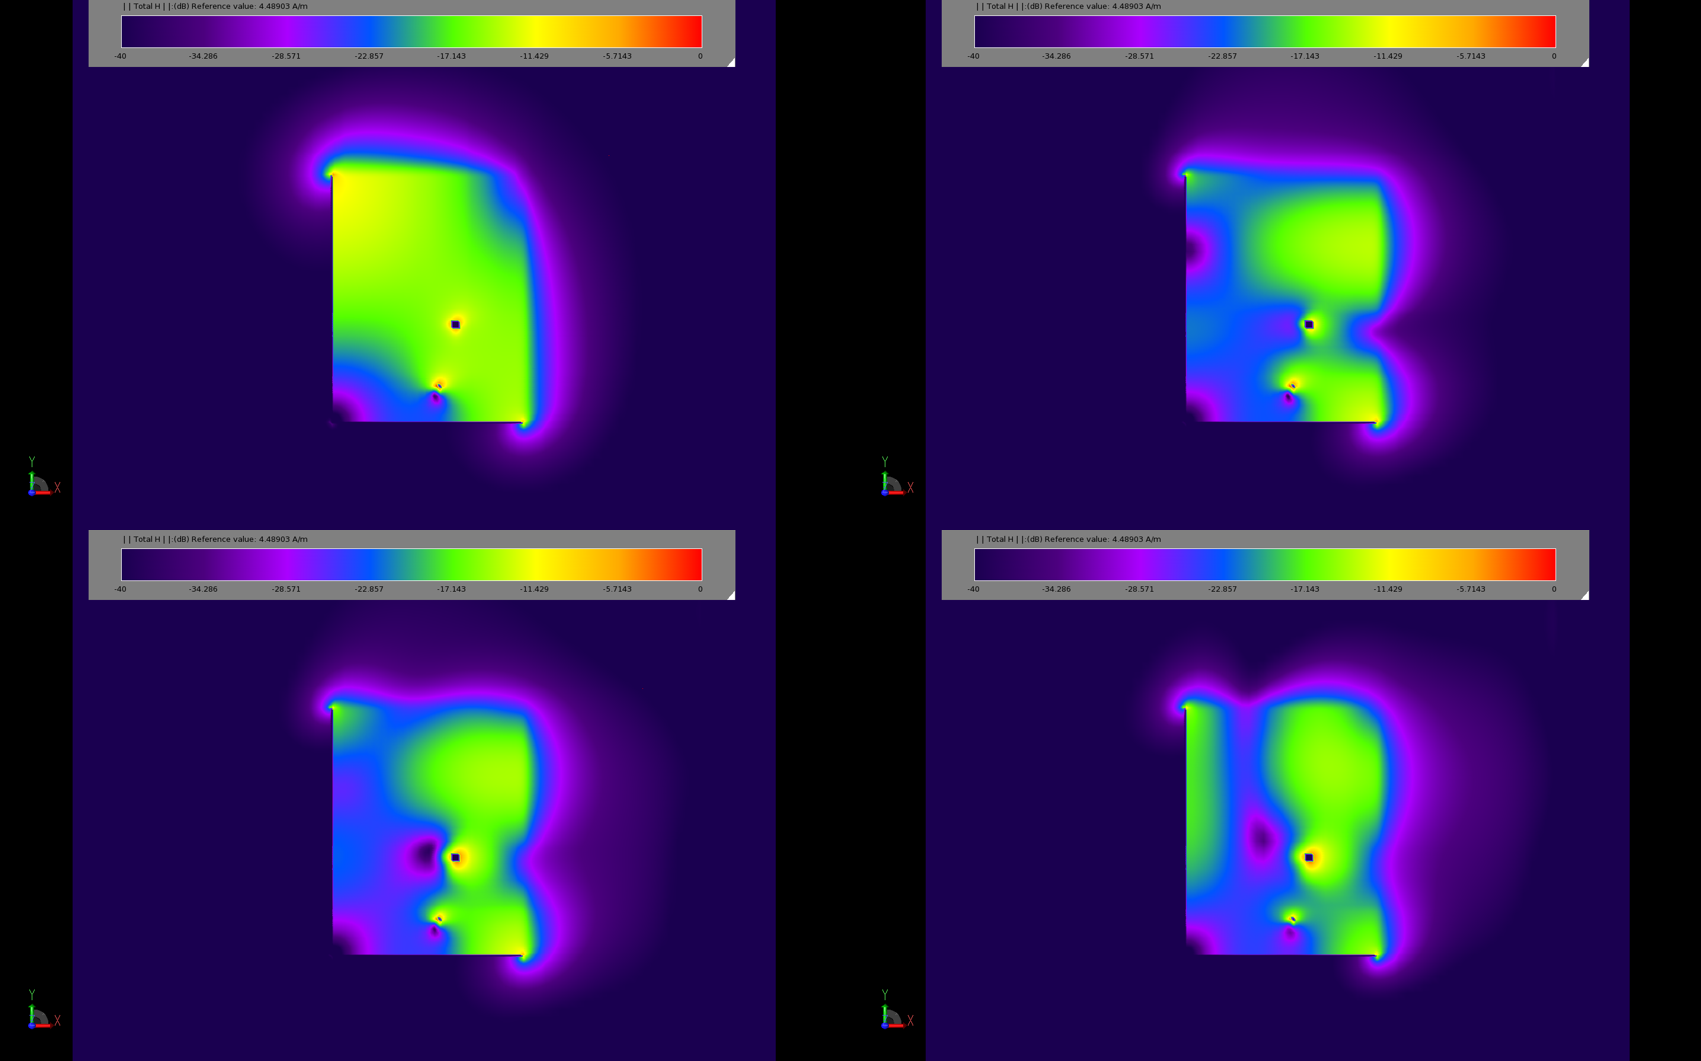 Figura 3: Los diagramas de la distribución del campo magnético en estado estacionario muestran los distintos modos de funcionamiento del parche. La imagen superior izquierda (3a) corresponde a 2,45 GHz, mientras que la superior derecha (3b) corresponde a 5,2 GHz. Las dos imágenes inferiores (3c y 3d) muestran la respuesta a 5....